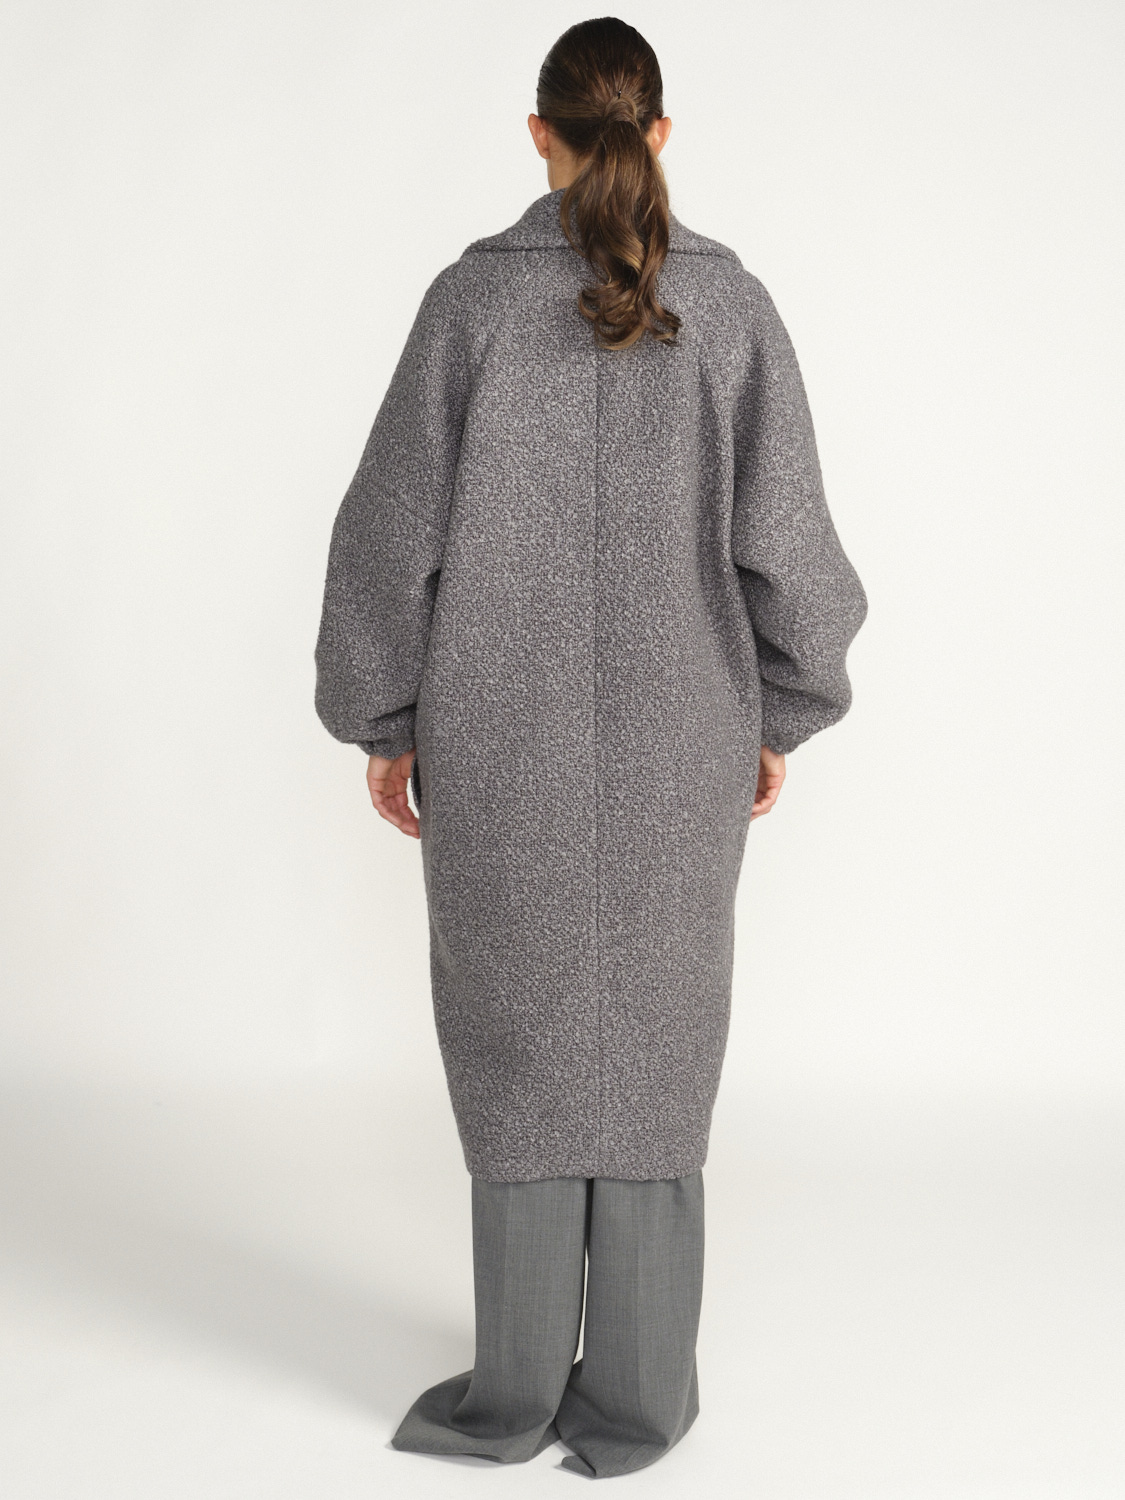 Patou Abrigo Elíptico - Nuevo abrigo de lana gris S